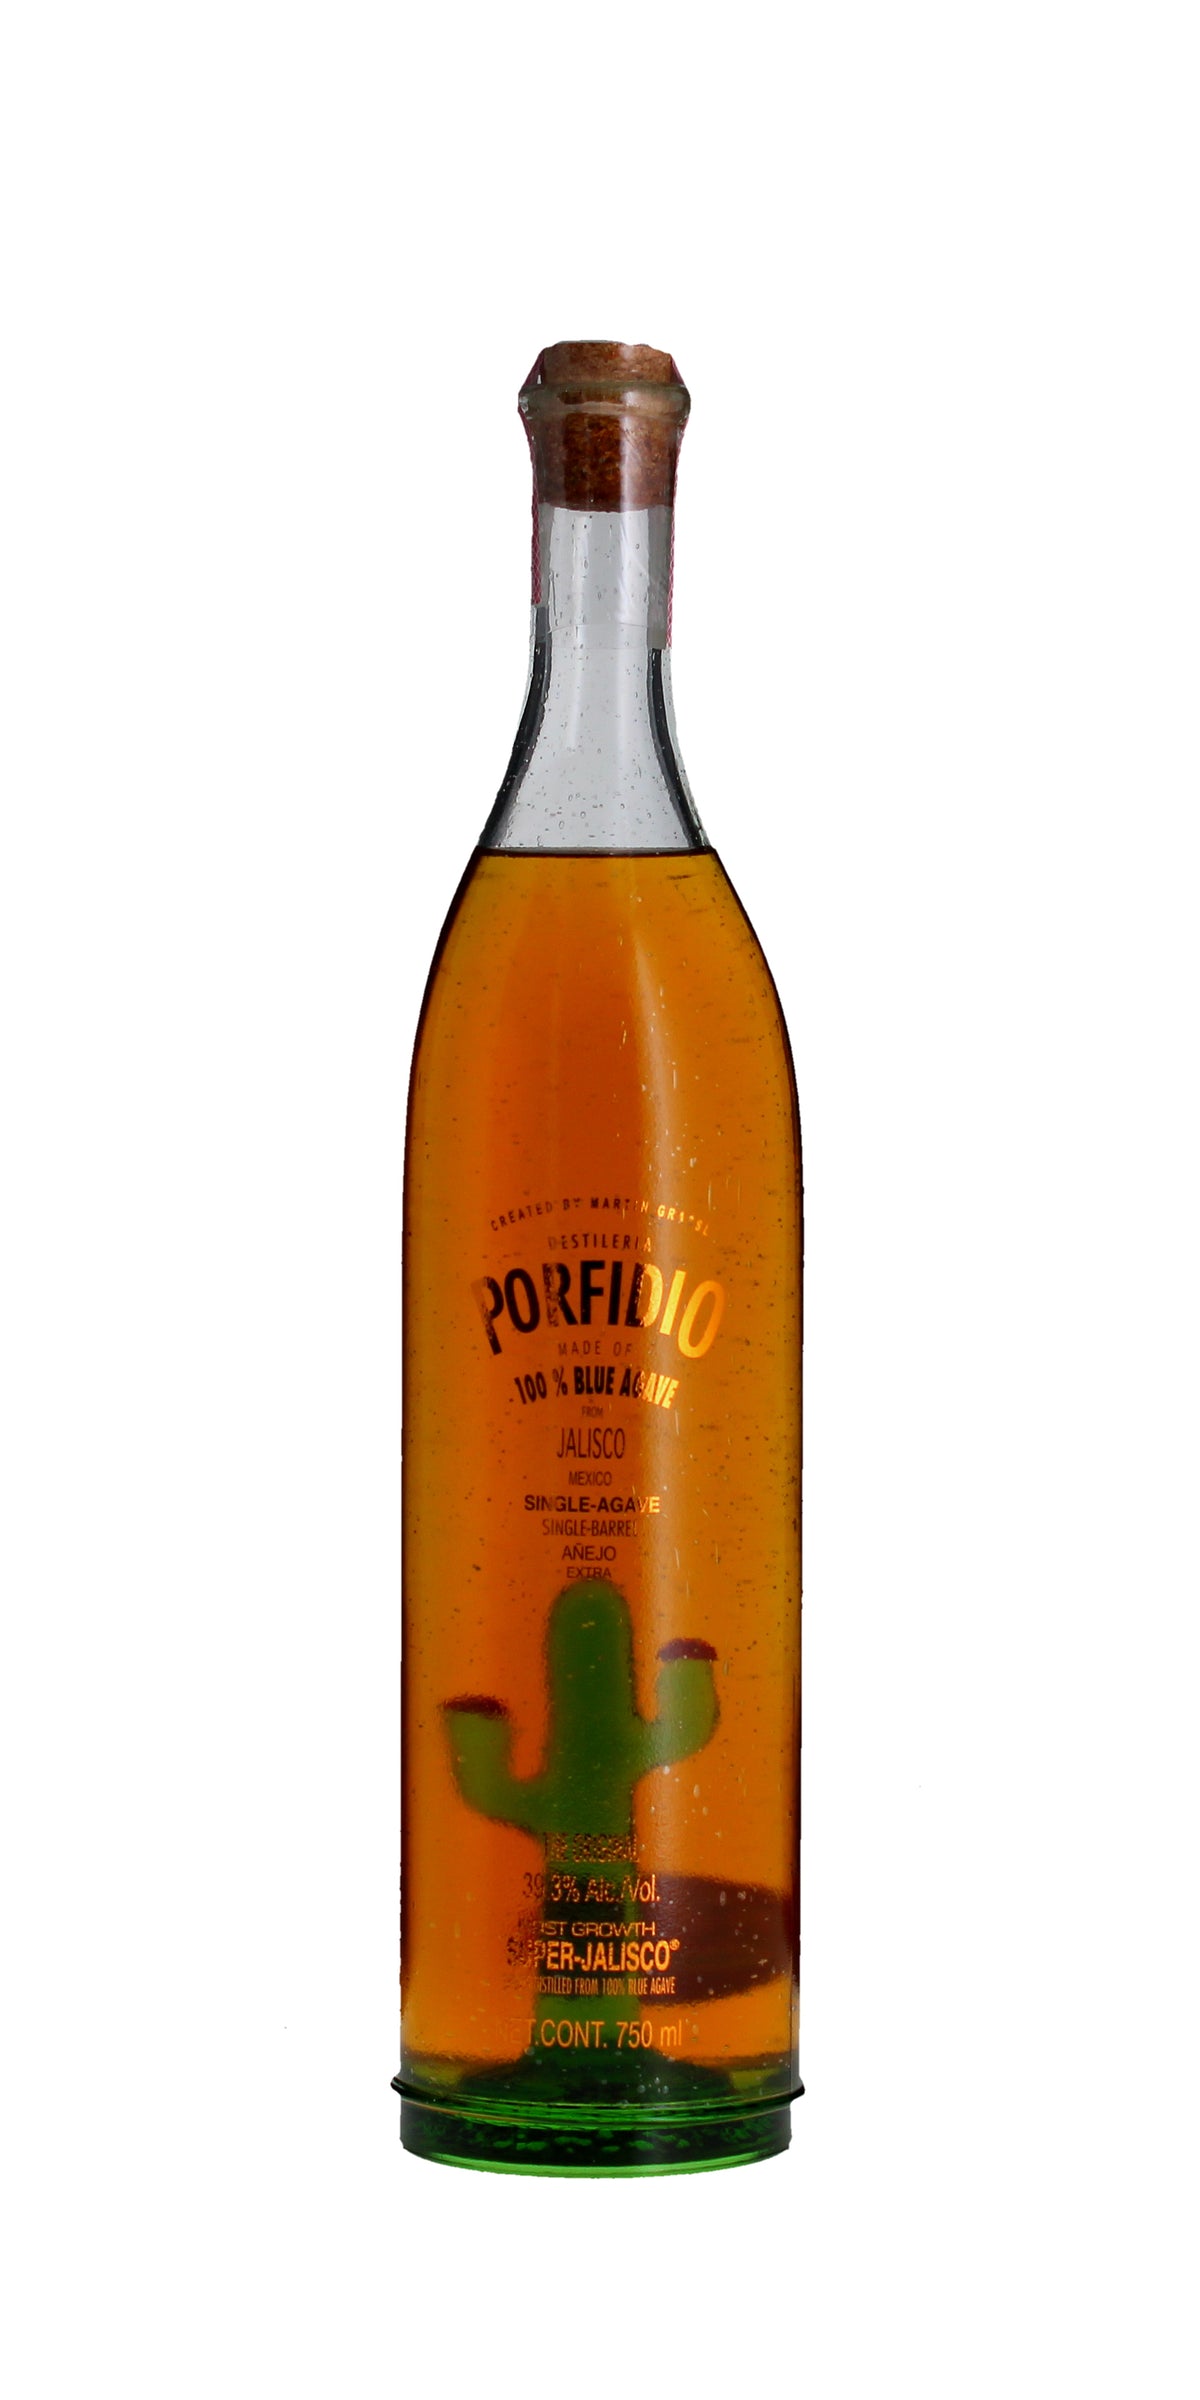 Porfidio 'The Original' Single Agave Single Barrel Tequila Extra Anejo, Jalisco, Mexico